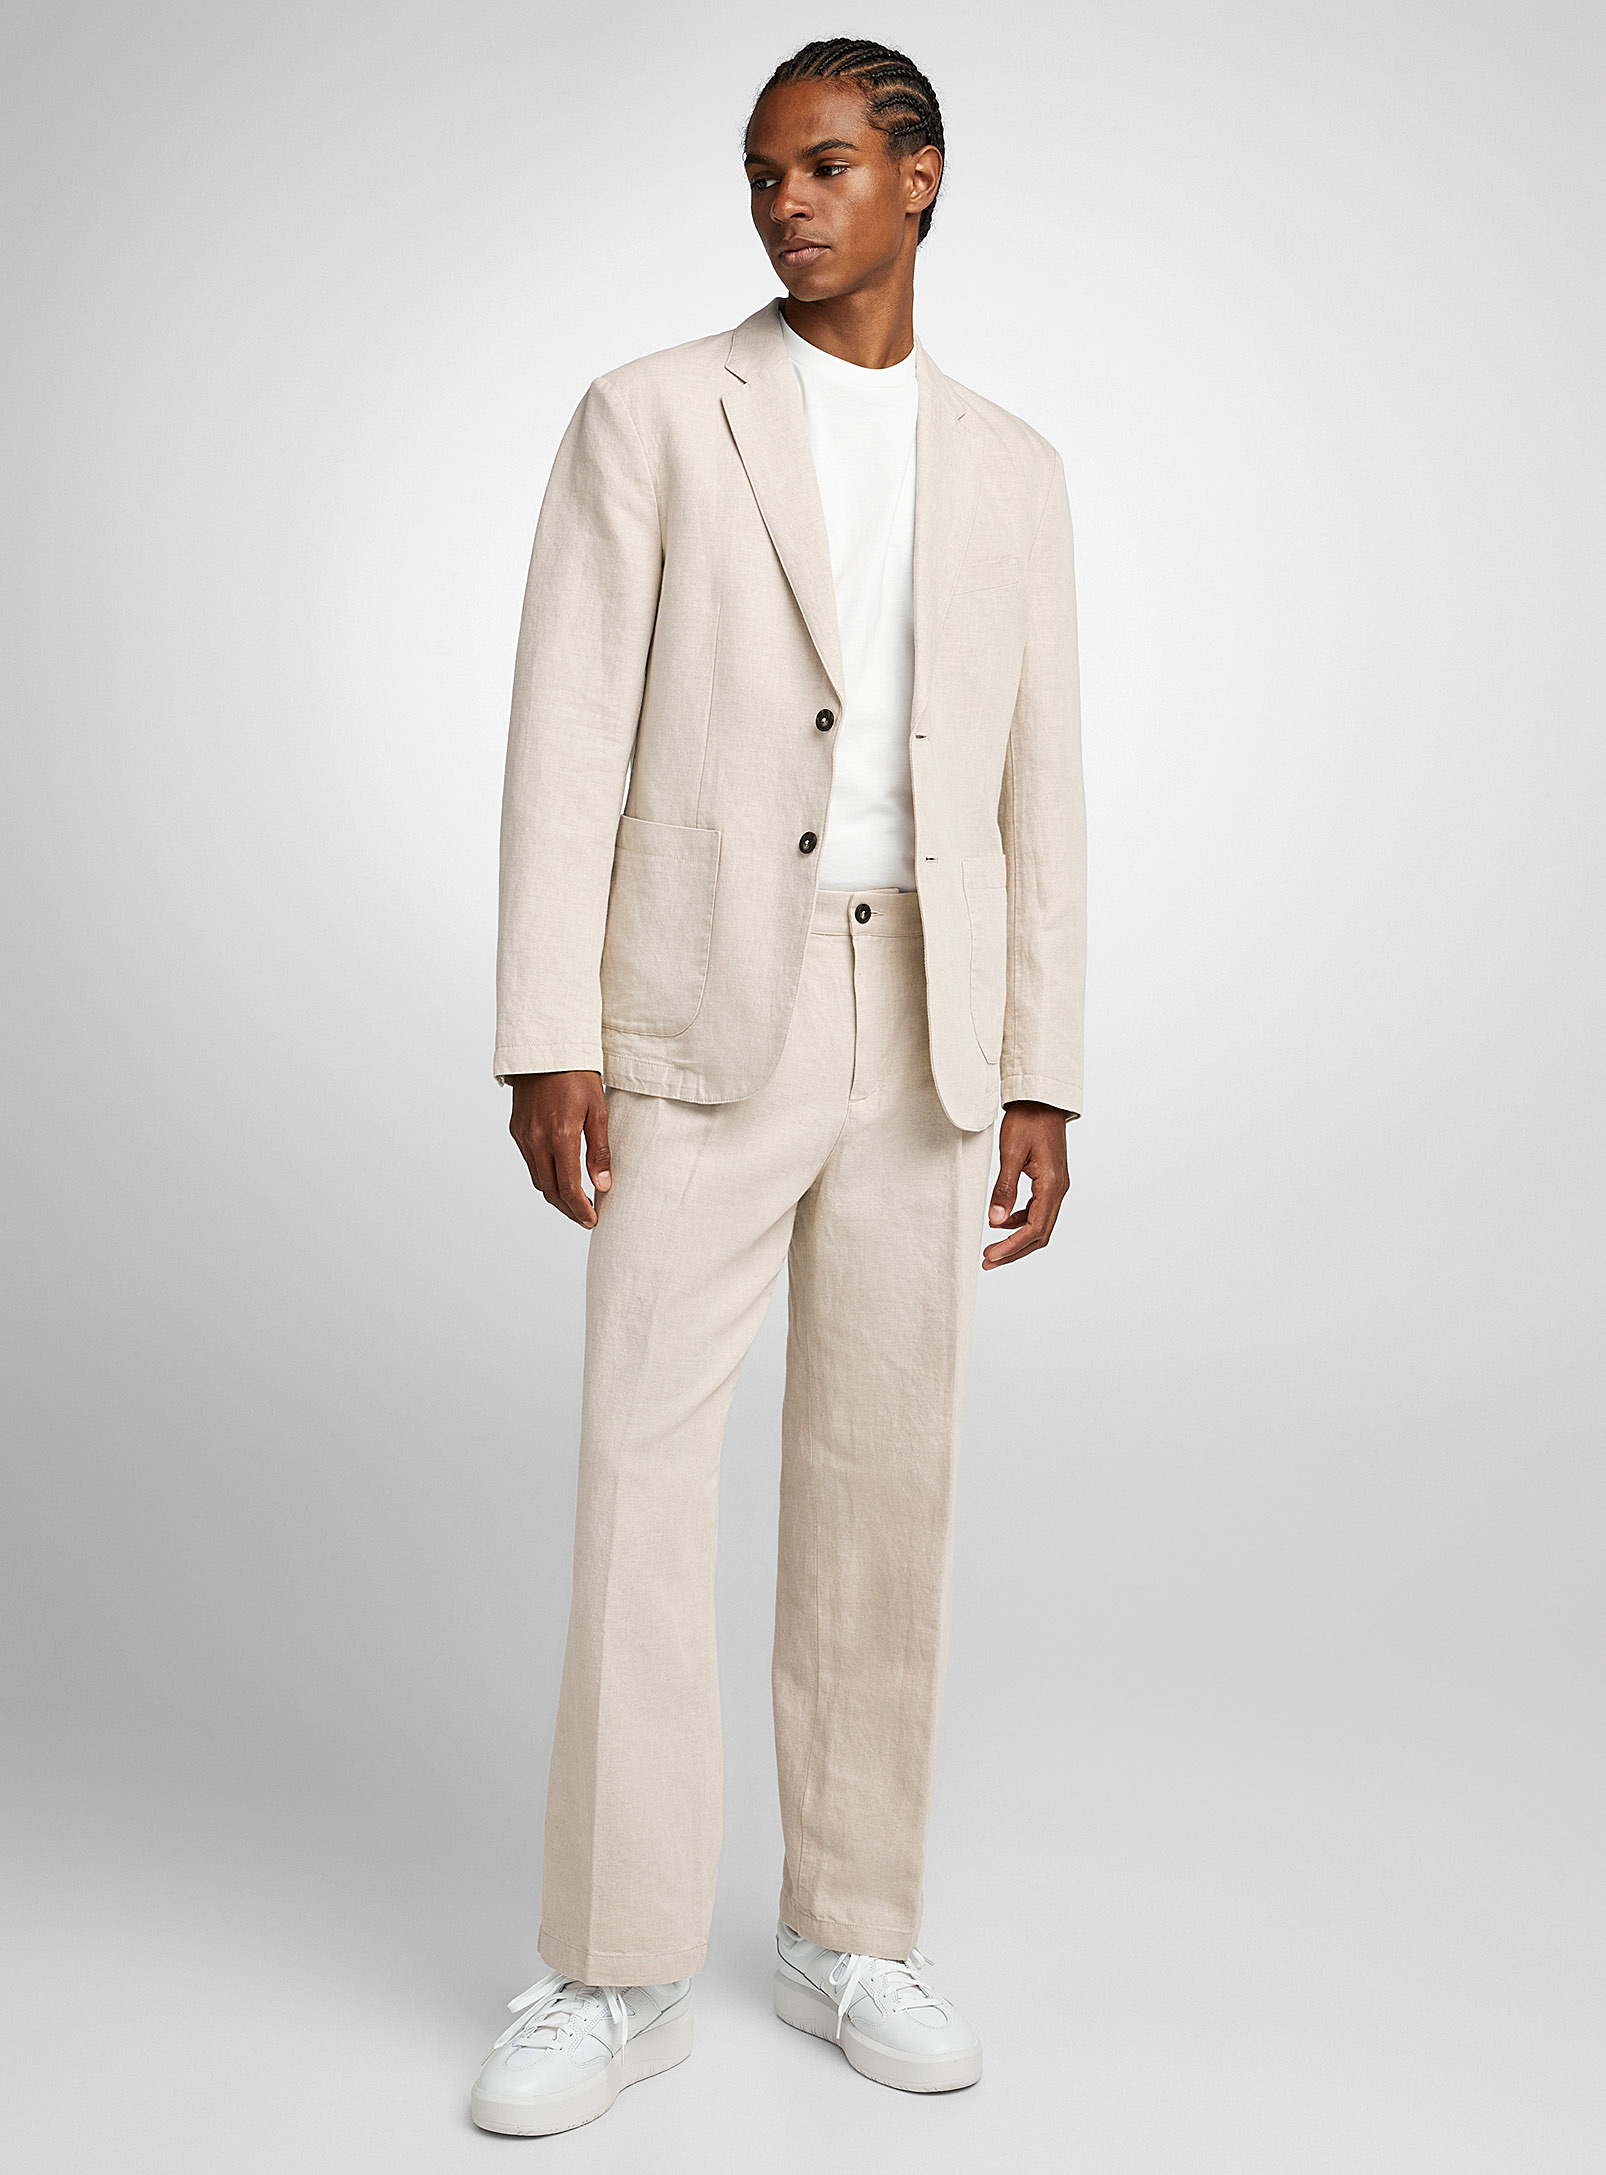 United Colors of Benetton - Men's Beige cotton-linen pleated pant